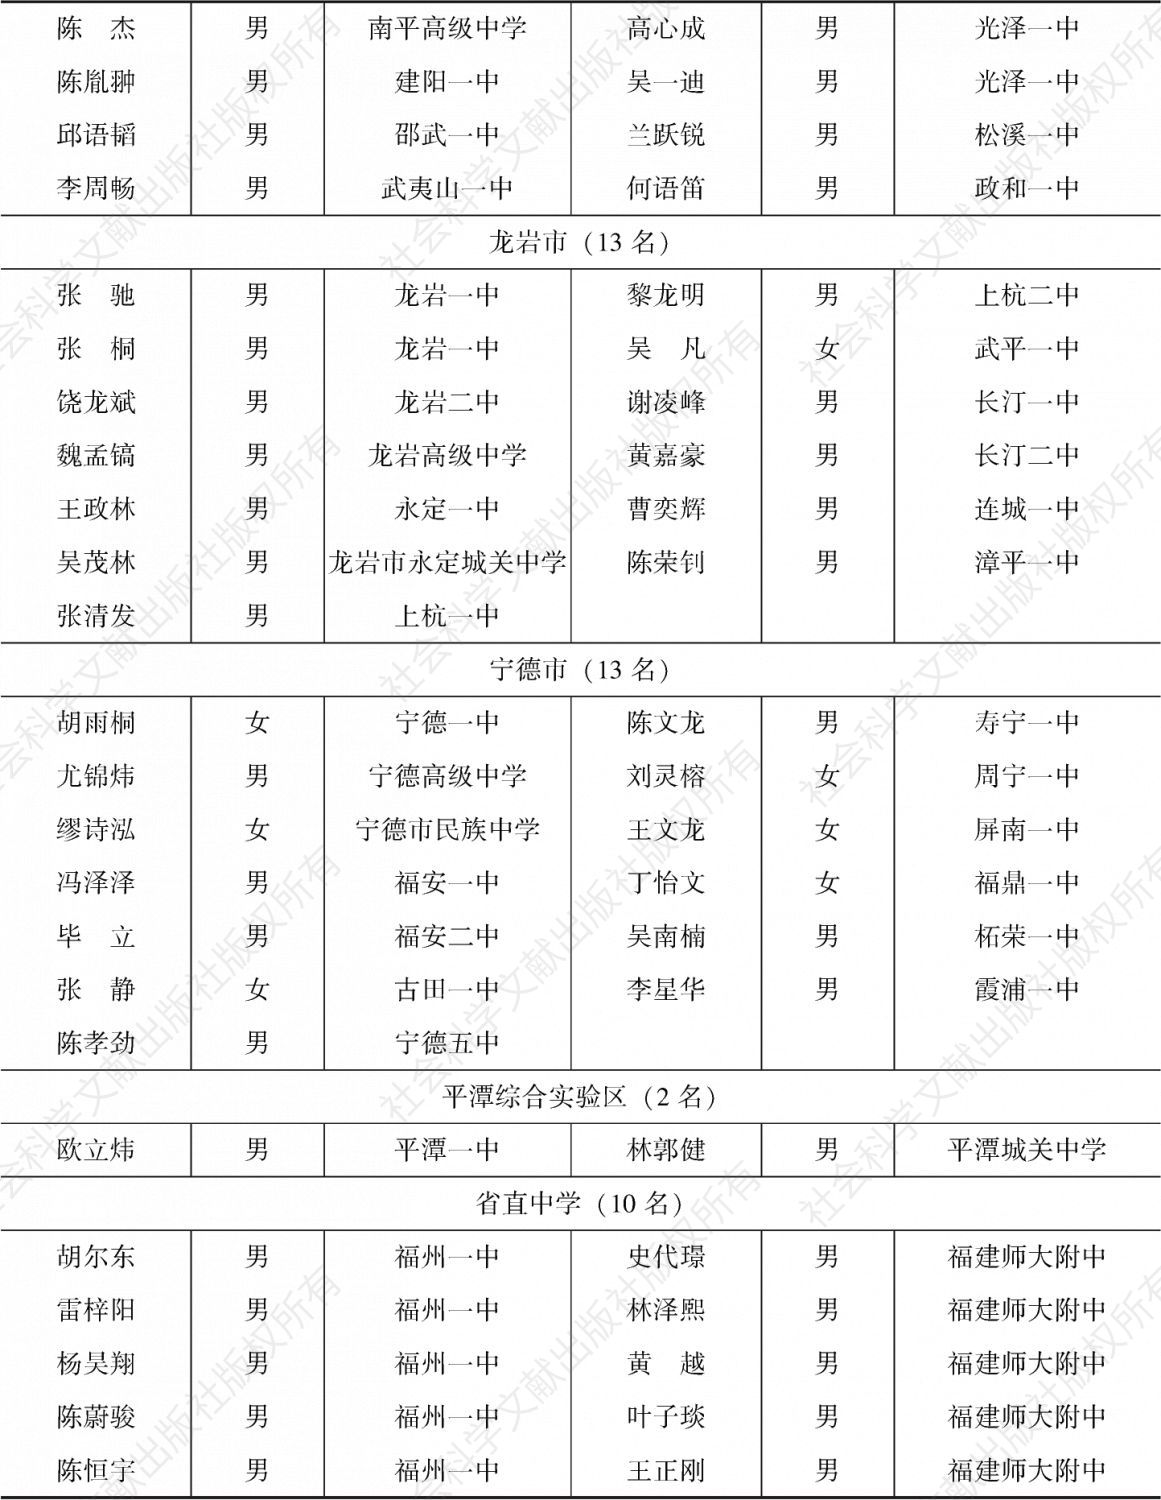 “庄采芳·庄重文奖学金”2018年获奖学生名单-续表3